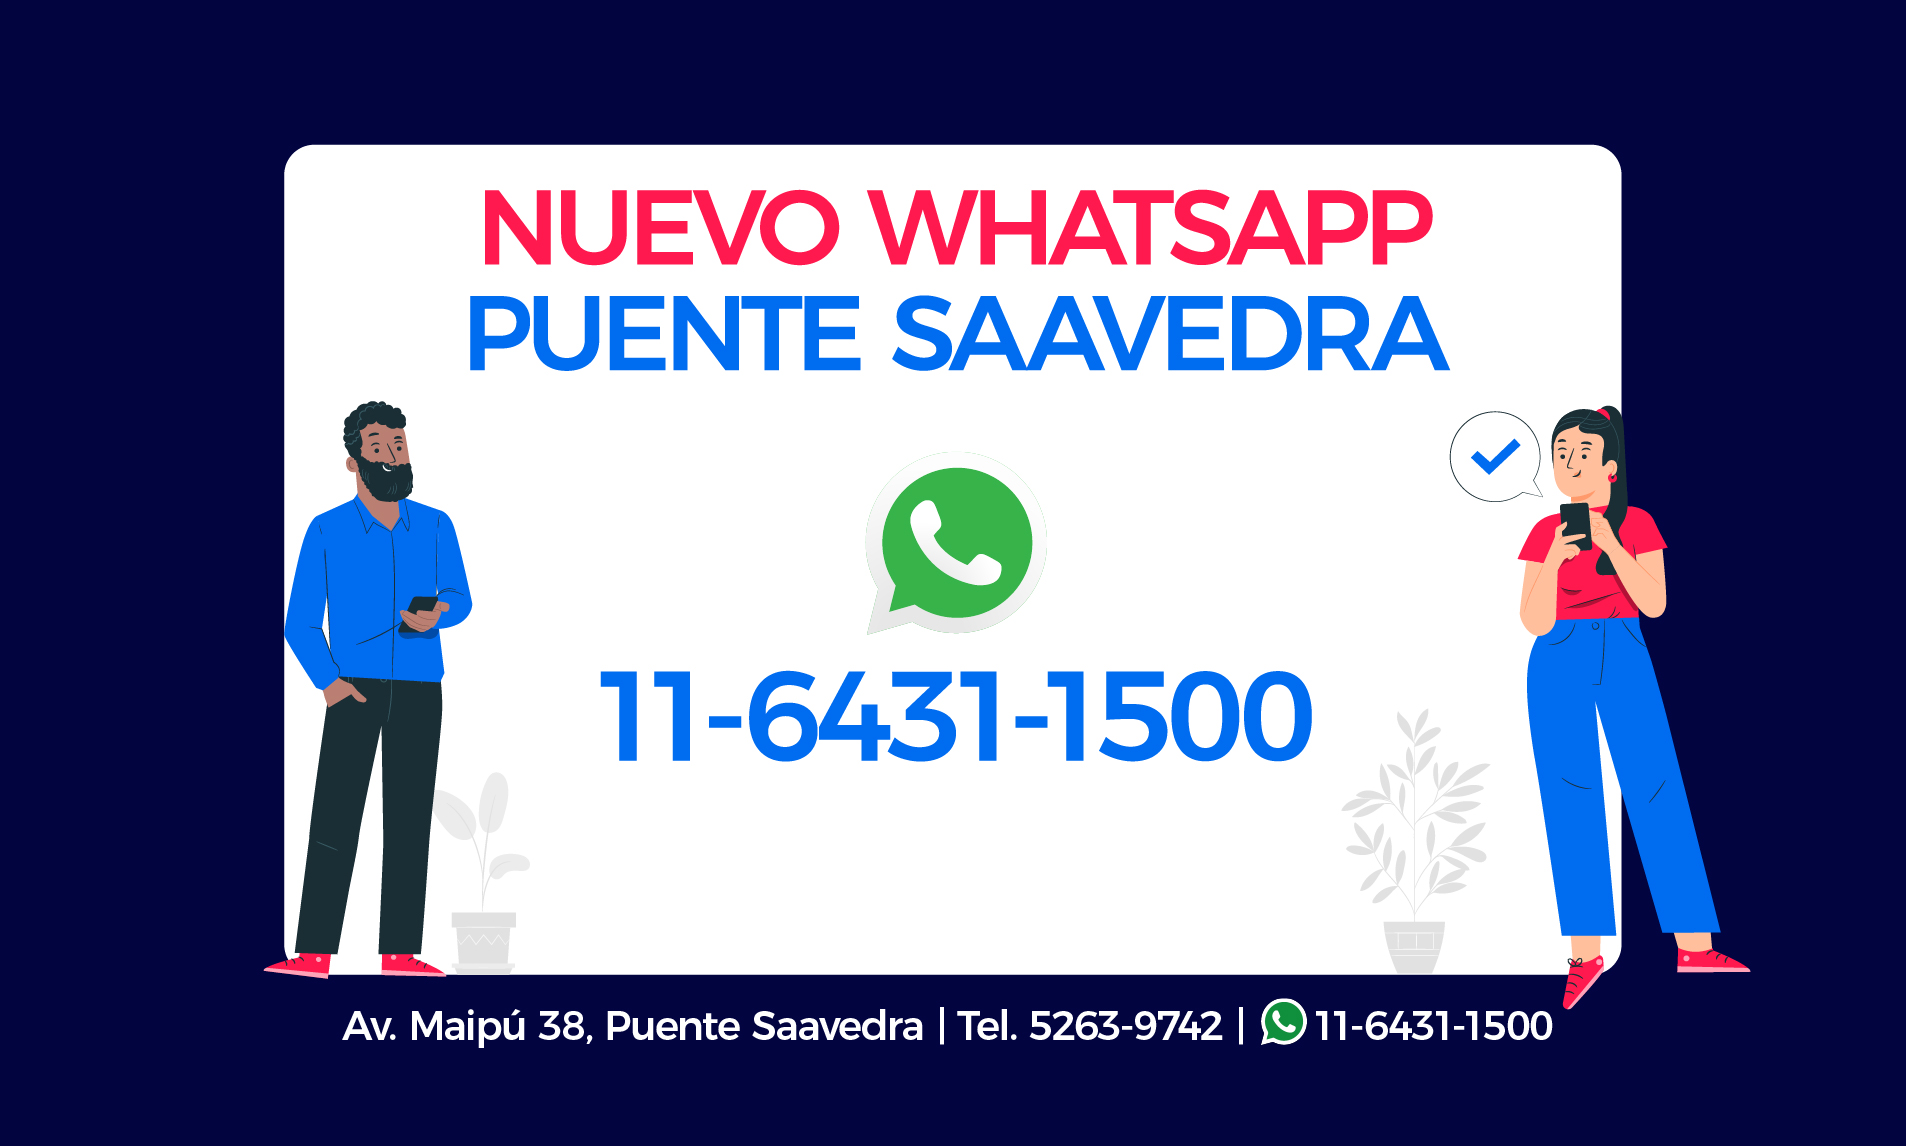 Nuevo whatsapp de Puente Saavedra 11-6431-1500